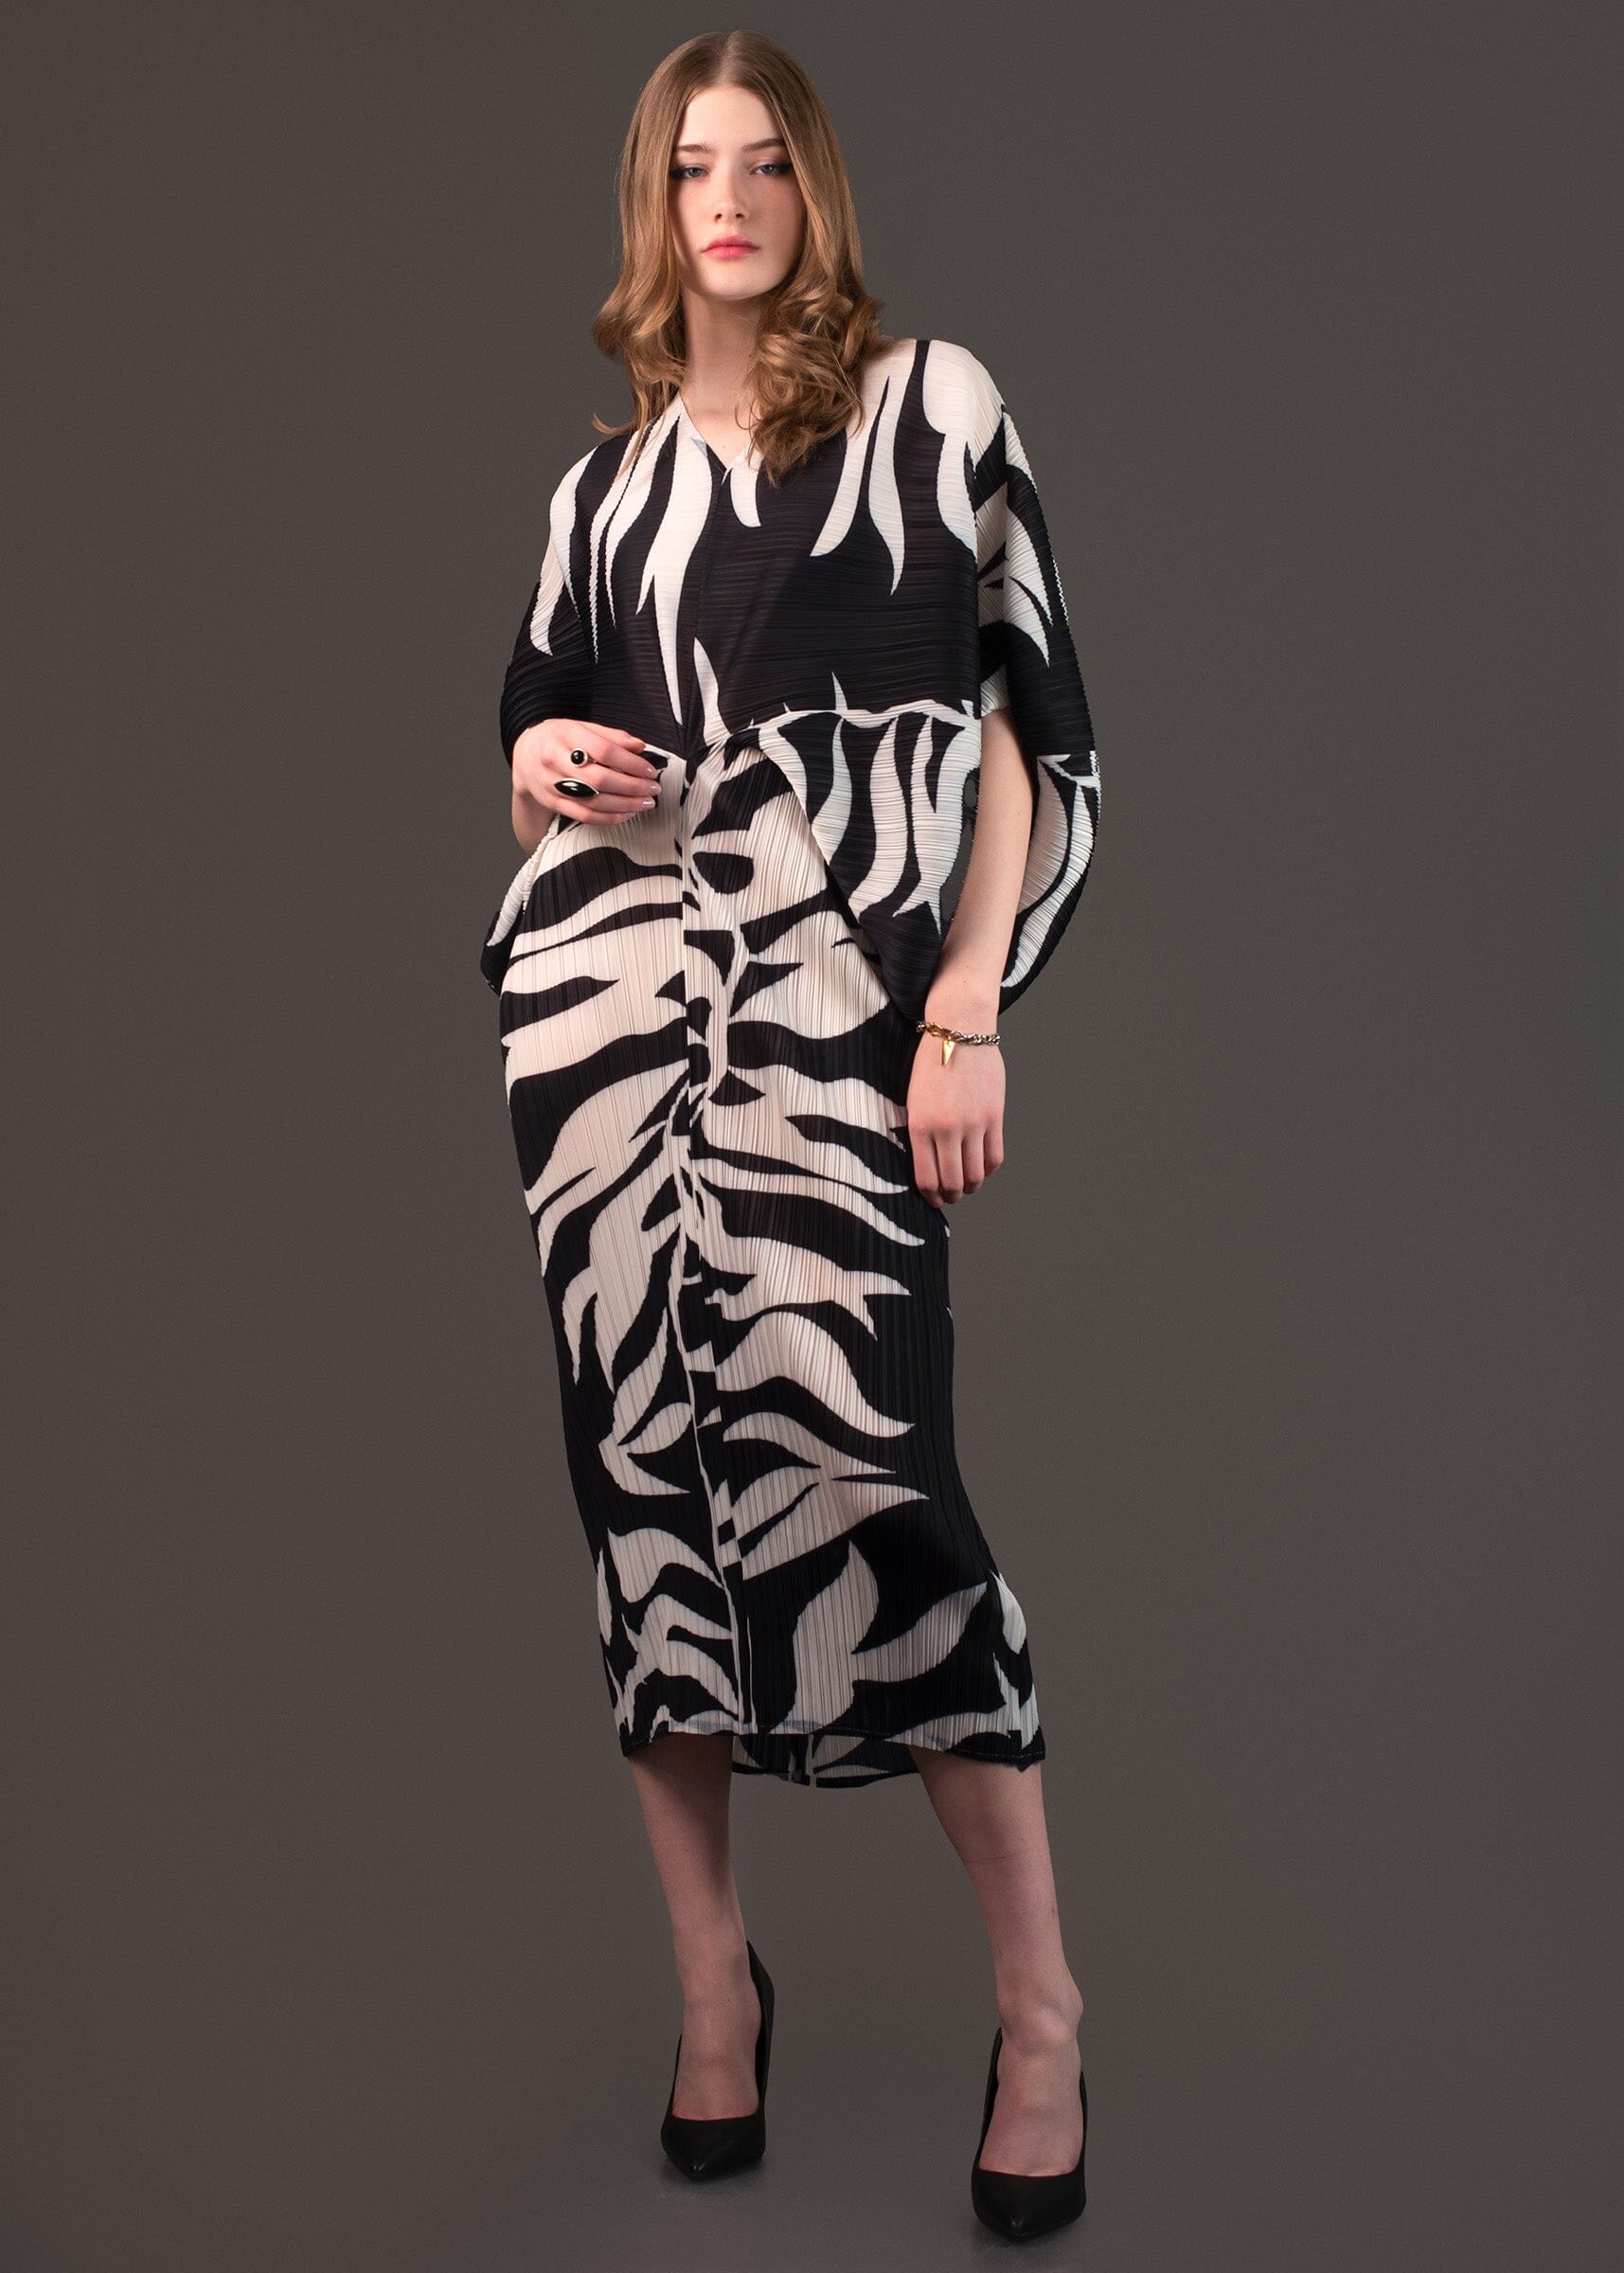 Printed Batwing Sleeve Dress Dresses Kate Hewko 